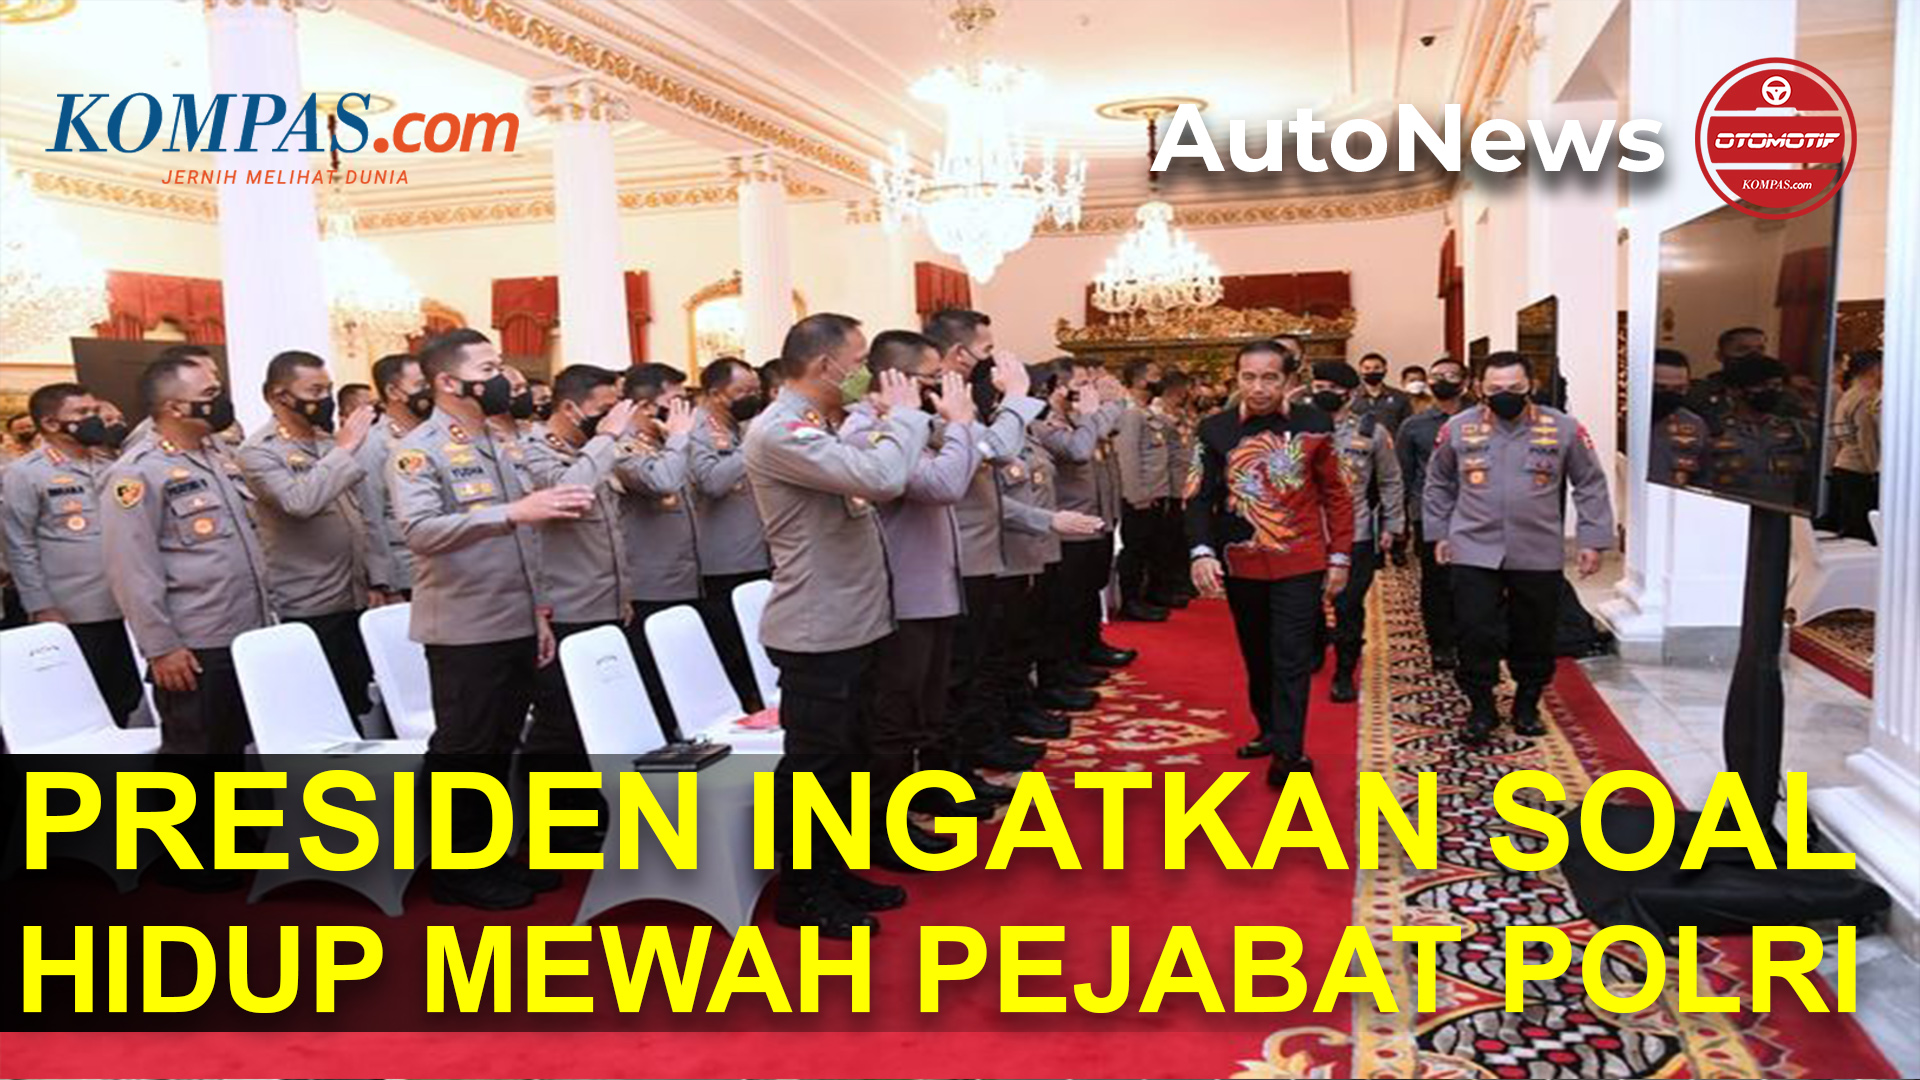 Jokowi Minta Pejabat Polri Tidak Gagah-gagahan Naik Mobil Mewah dan Moge